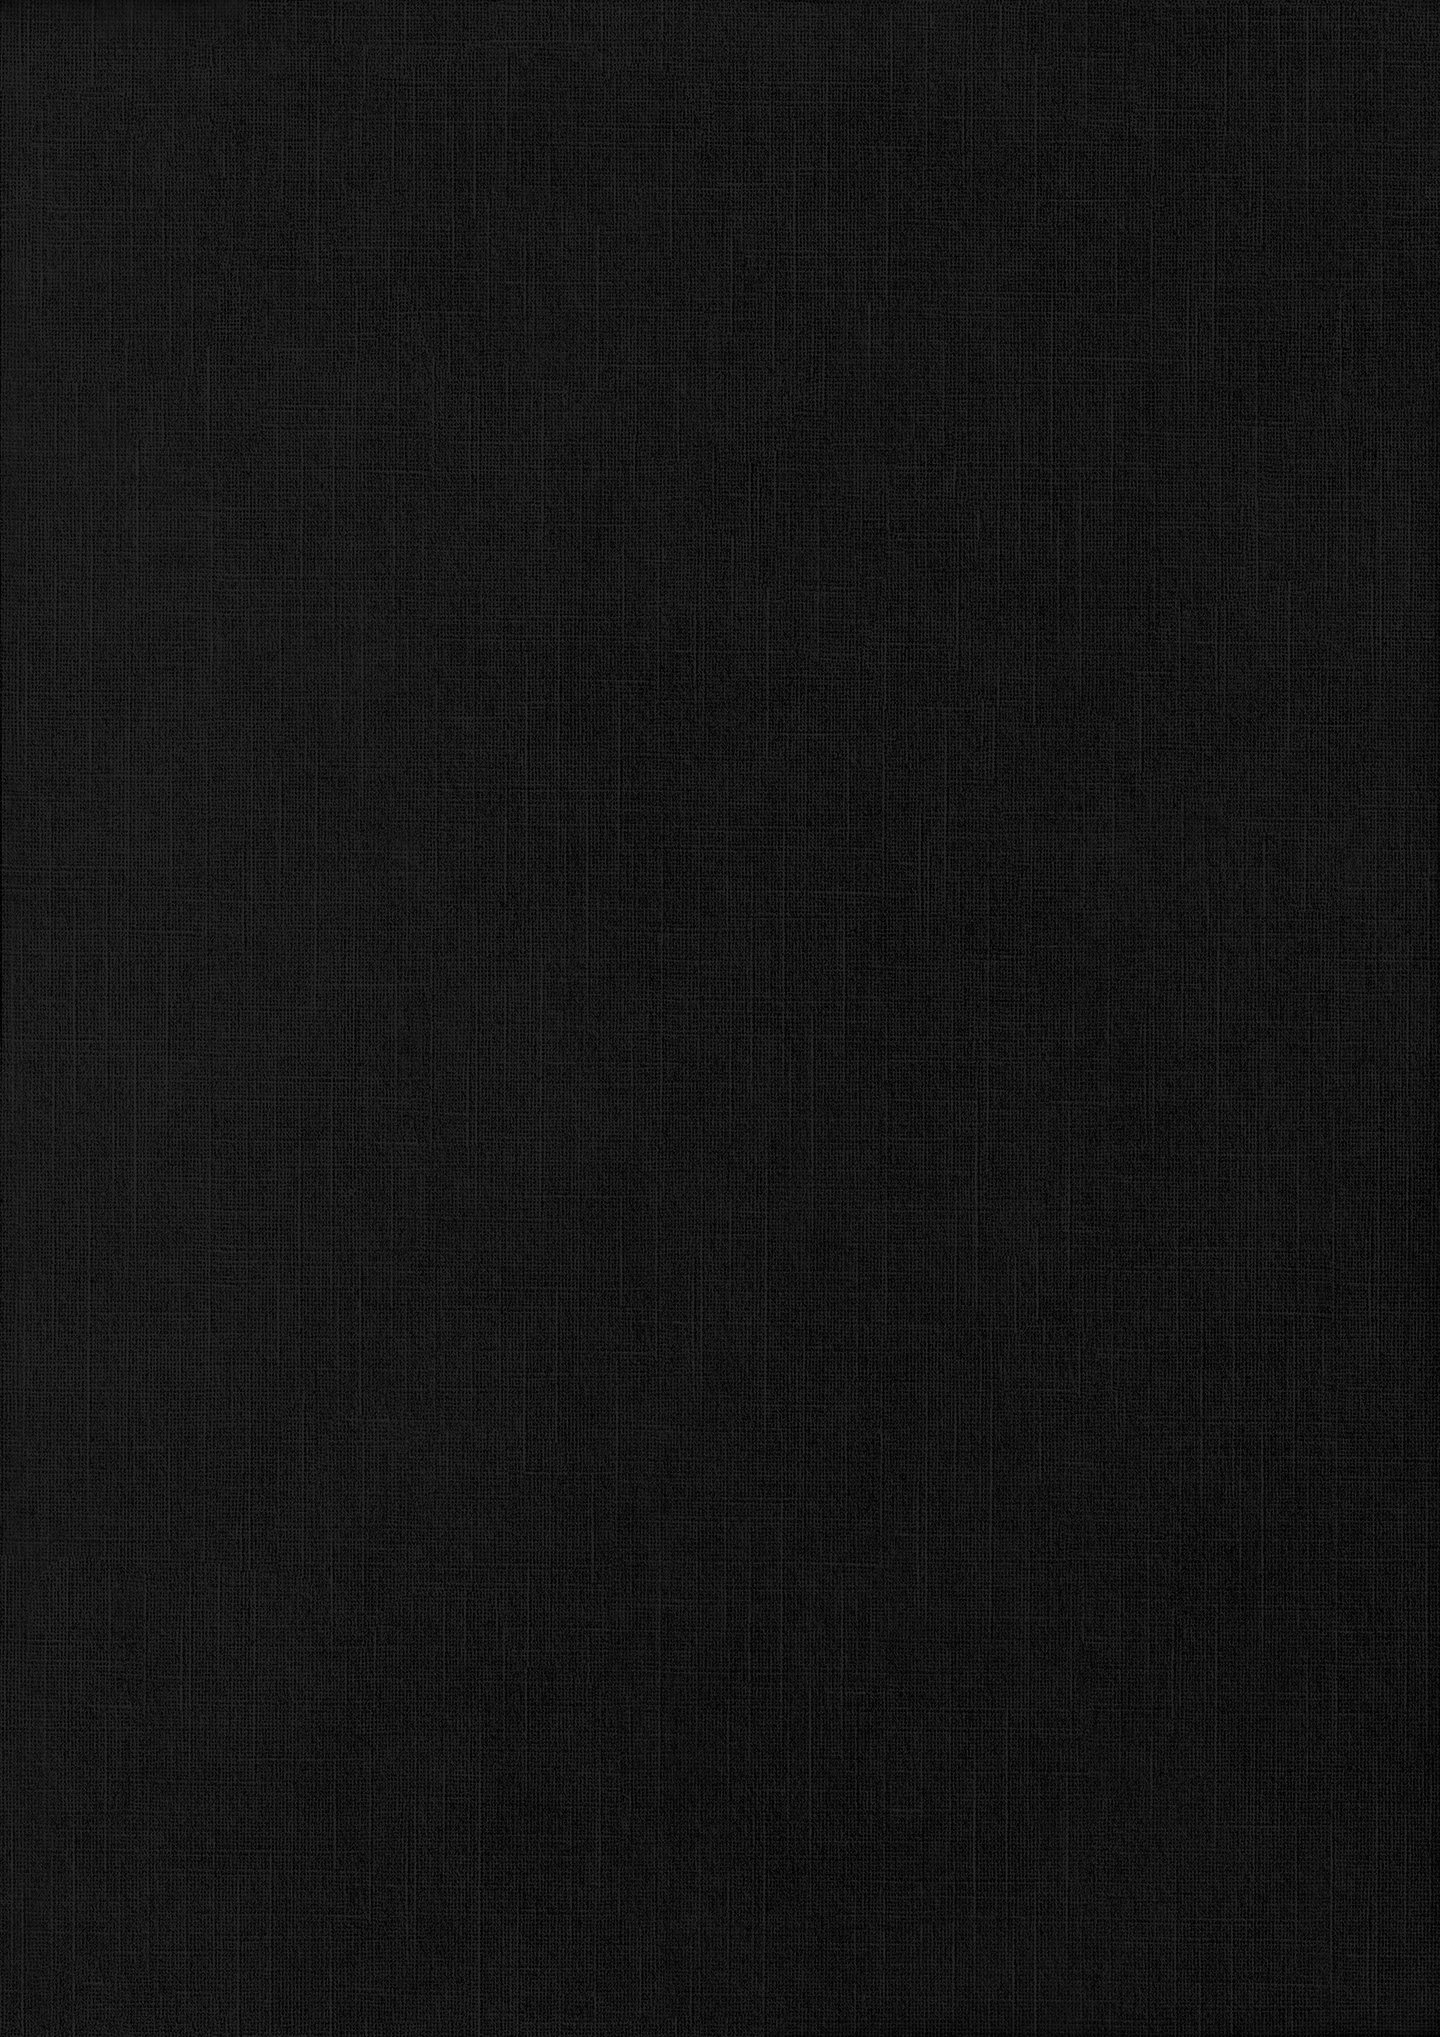 09 black paper different texture types a4 fine linen 74